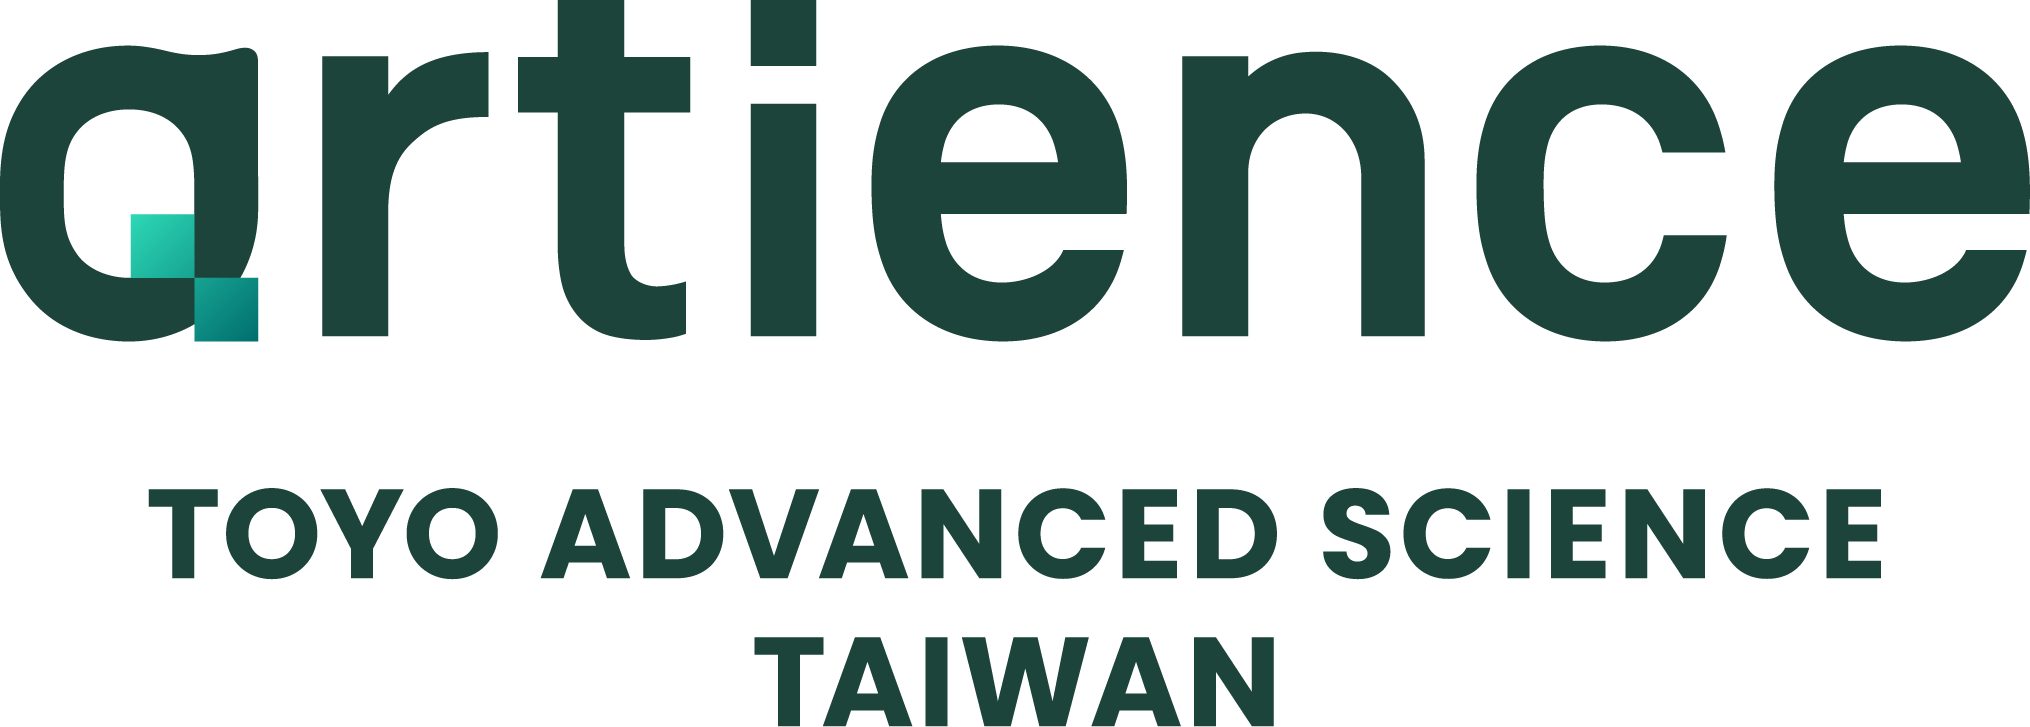 台灣東洋先端科技股份有限公司(東洋彩光+東洋油墨) TOYO ADVANCED SCIENCE TAIWAN